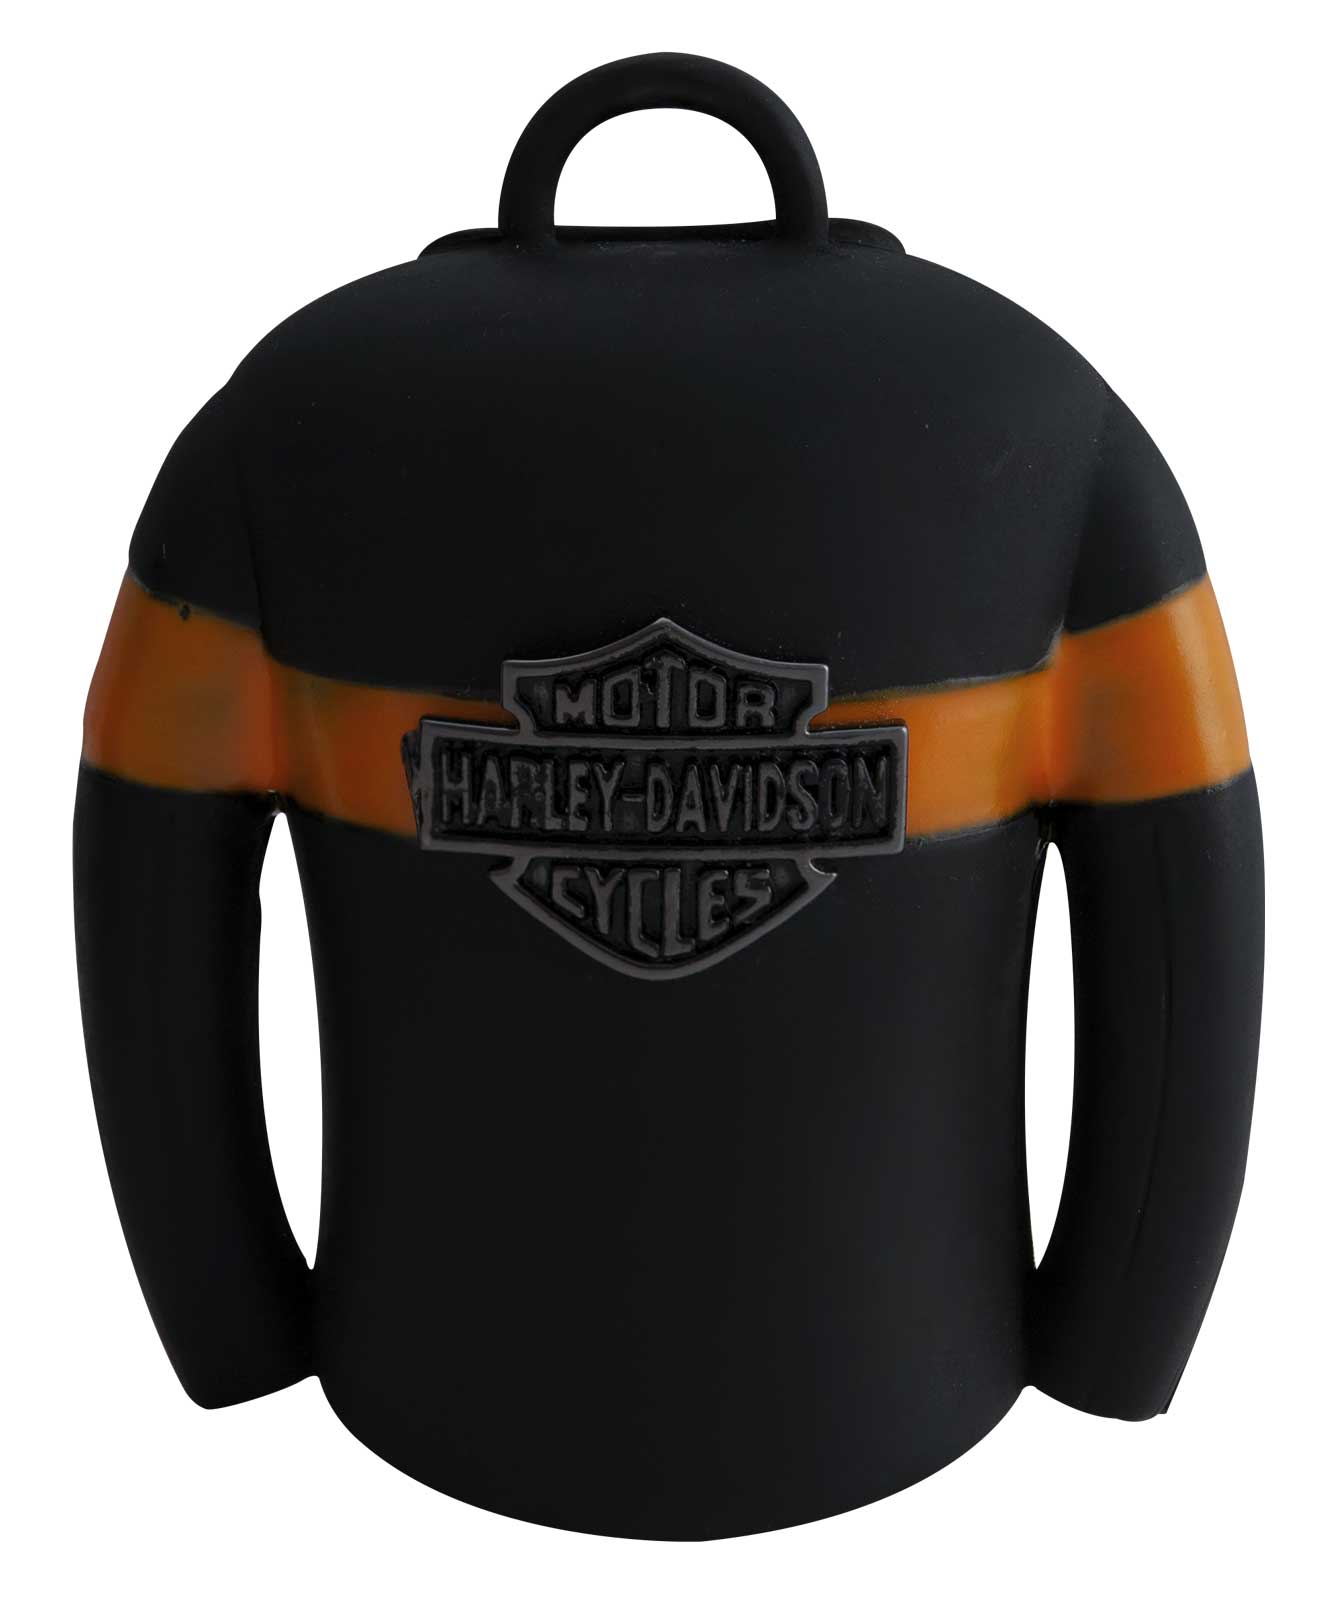 Harley-Davidson® Bar & Shield Leather Jacket Shaped Ride Bell - Black & Orange